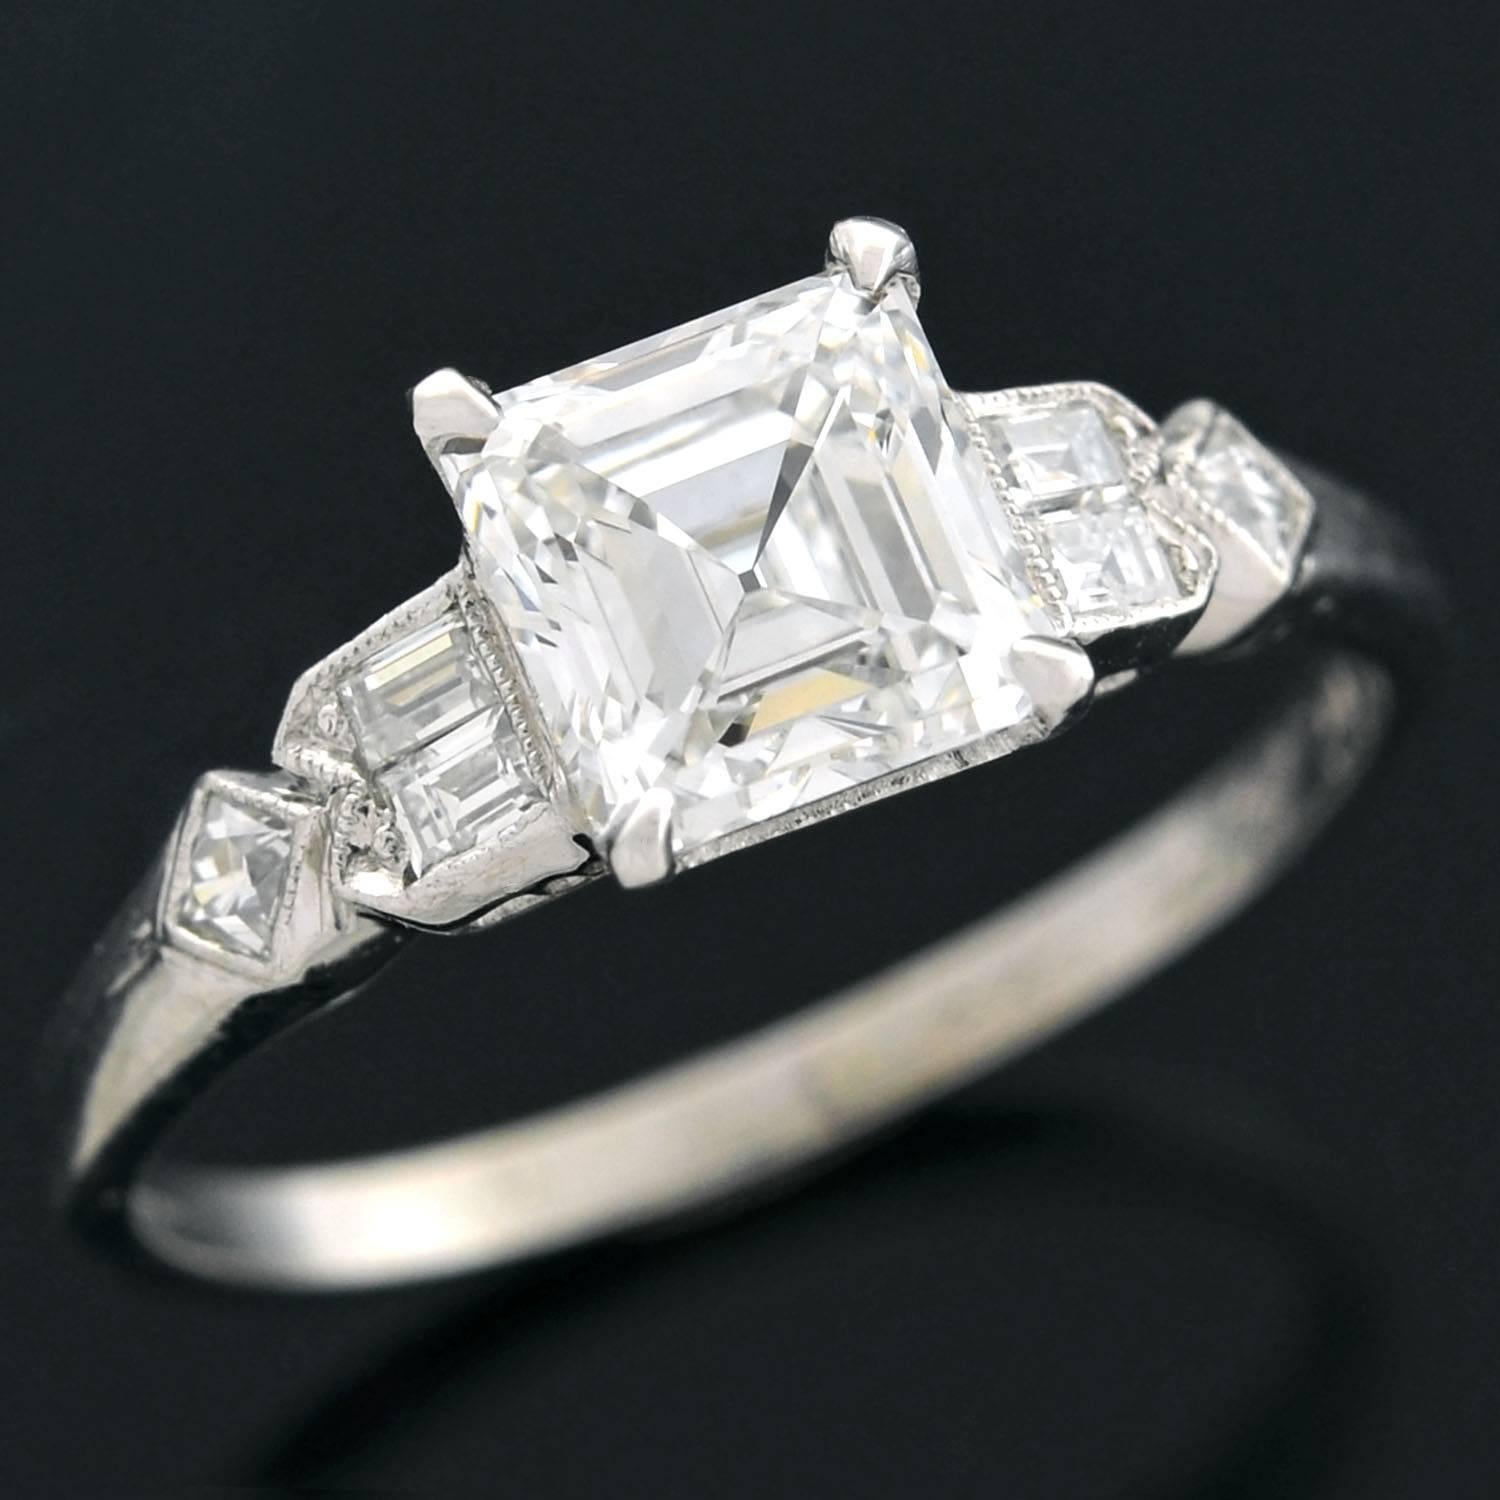 1.5 carat emerald cut diamond price